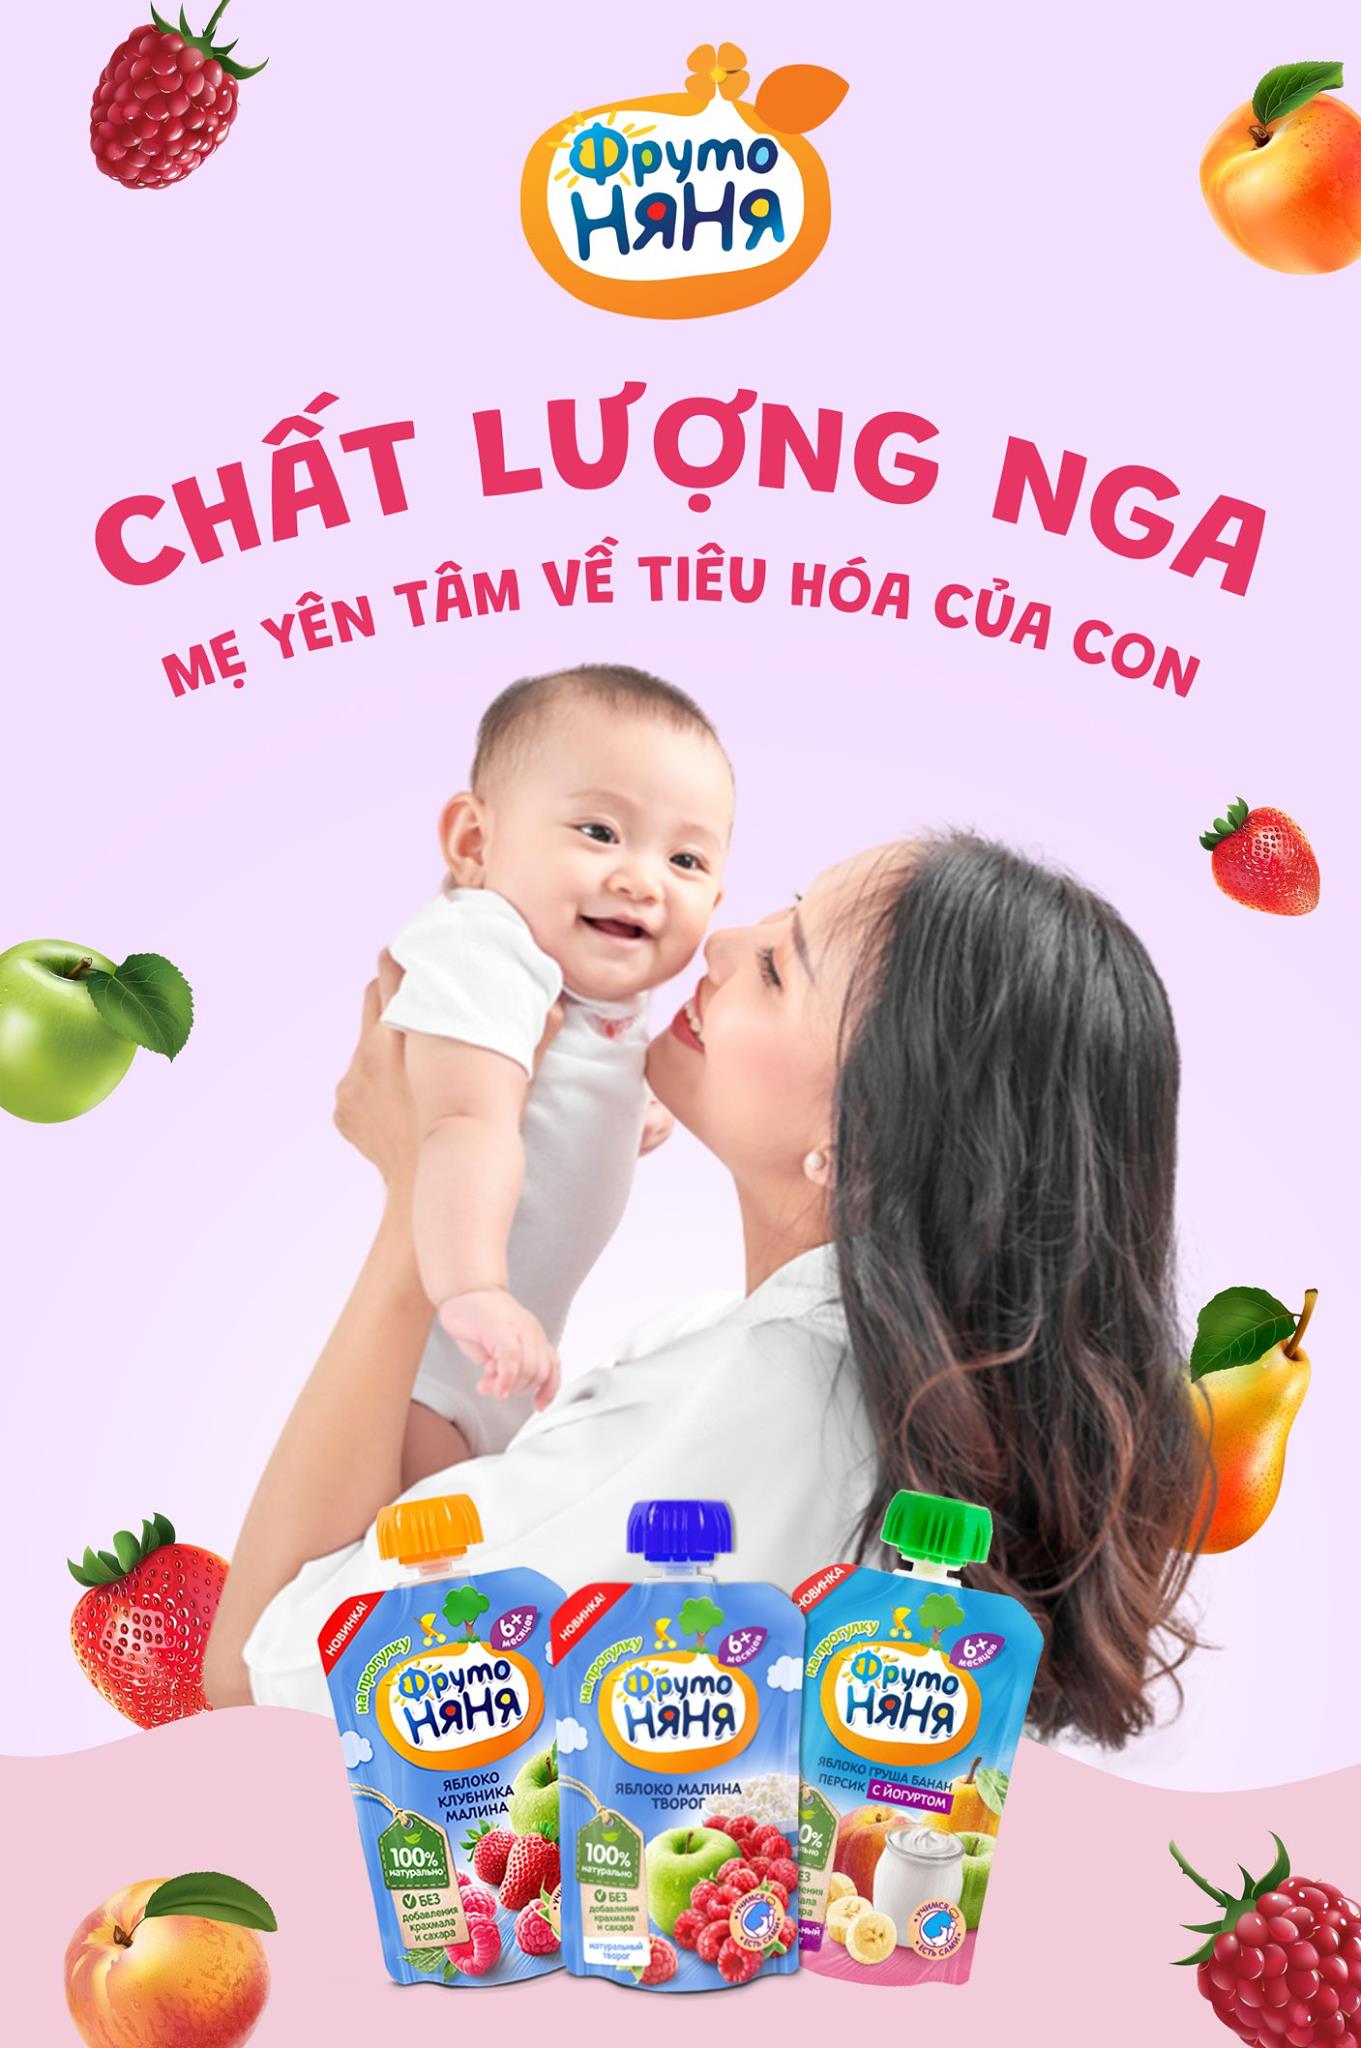 chat luong nga | GUDJOB